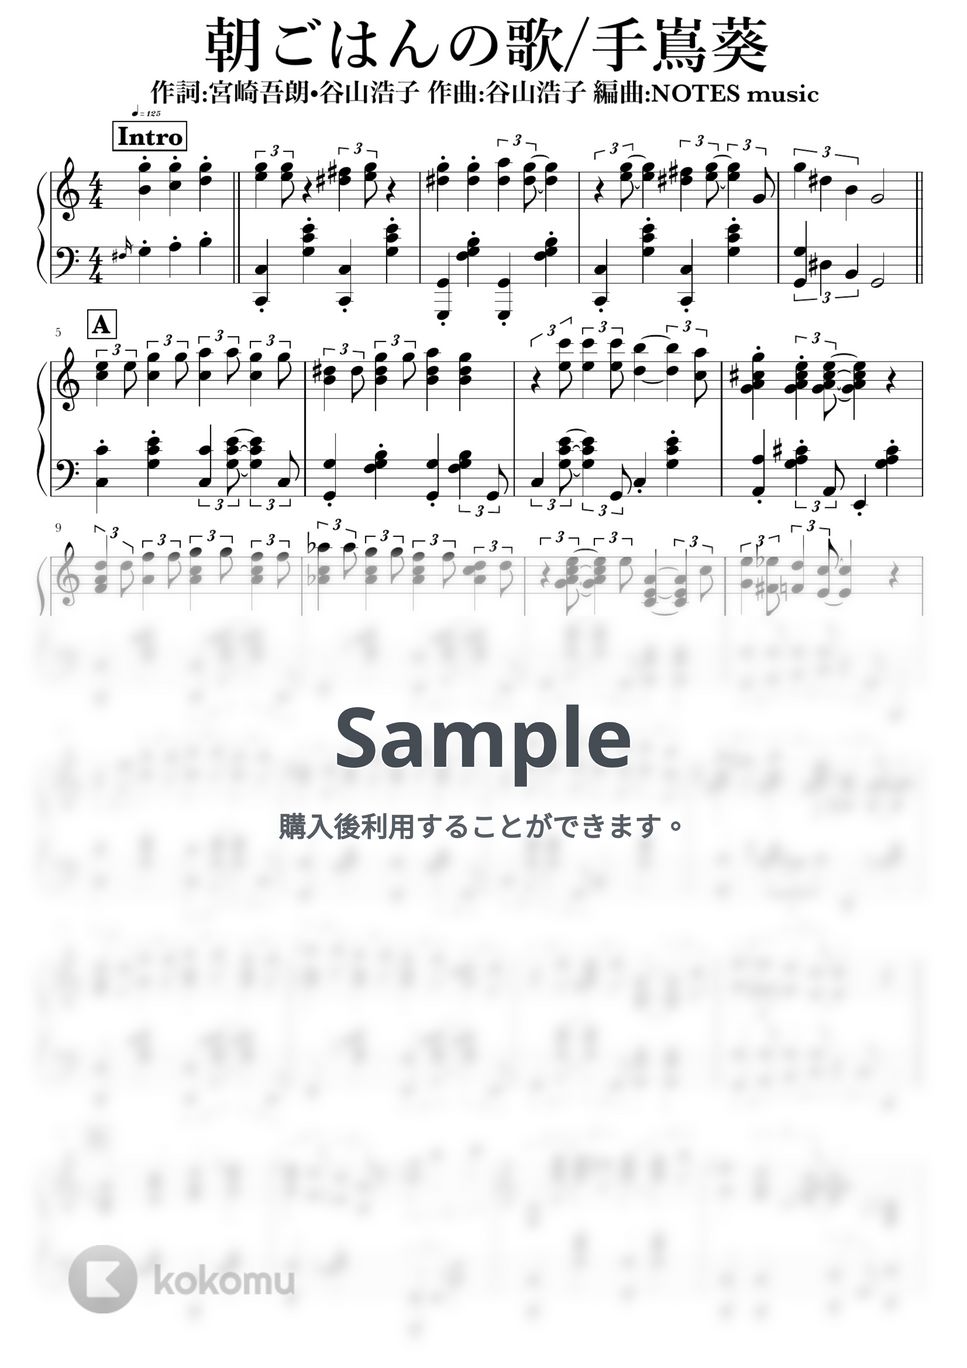 手嶌葵 - 朝ごはんの歌 (コクリコ坂から) by NOTES music